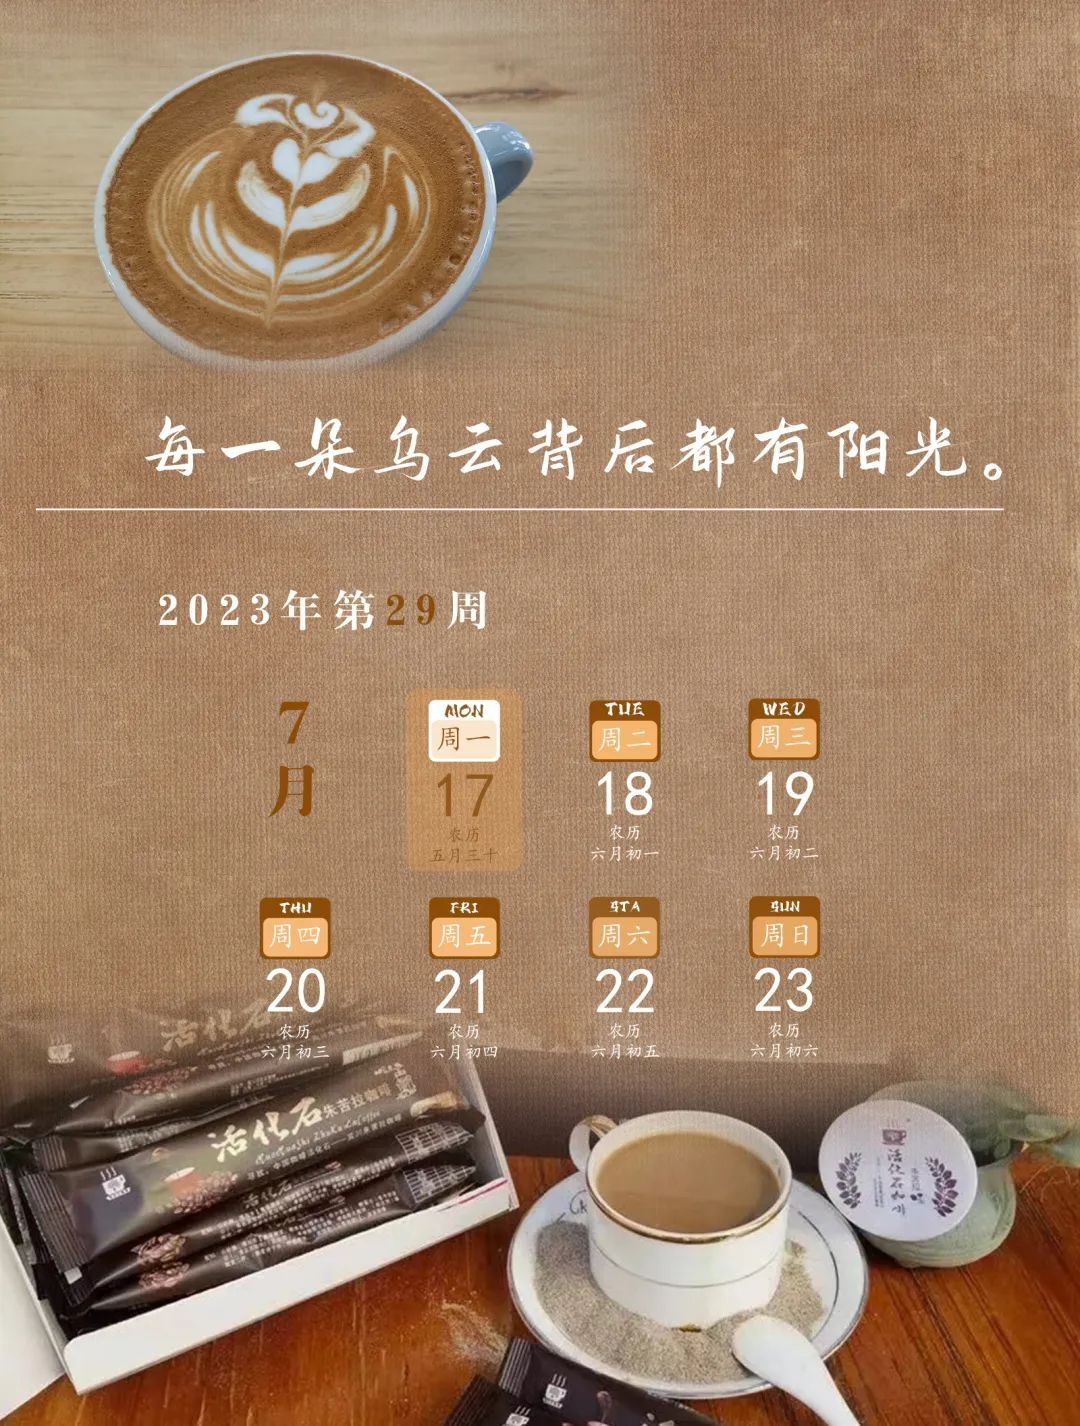 朱苦拉咖啡价格表图片